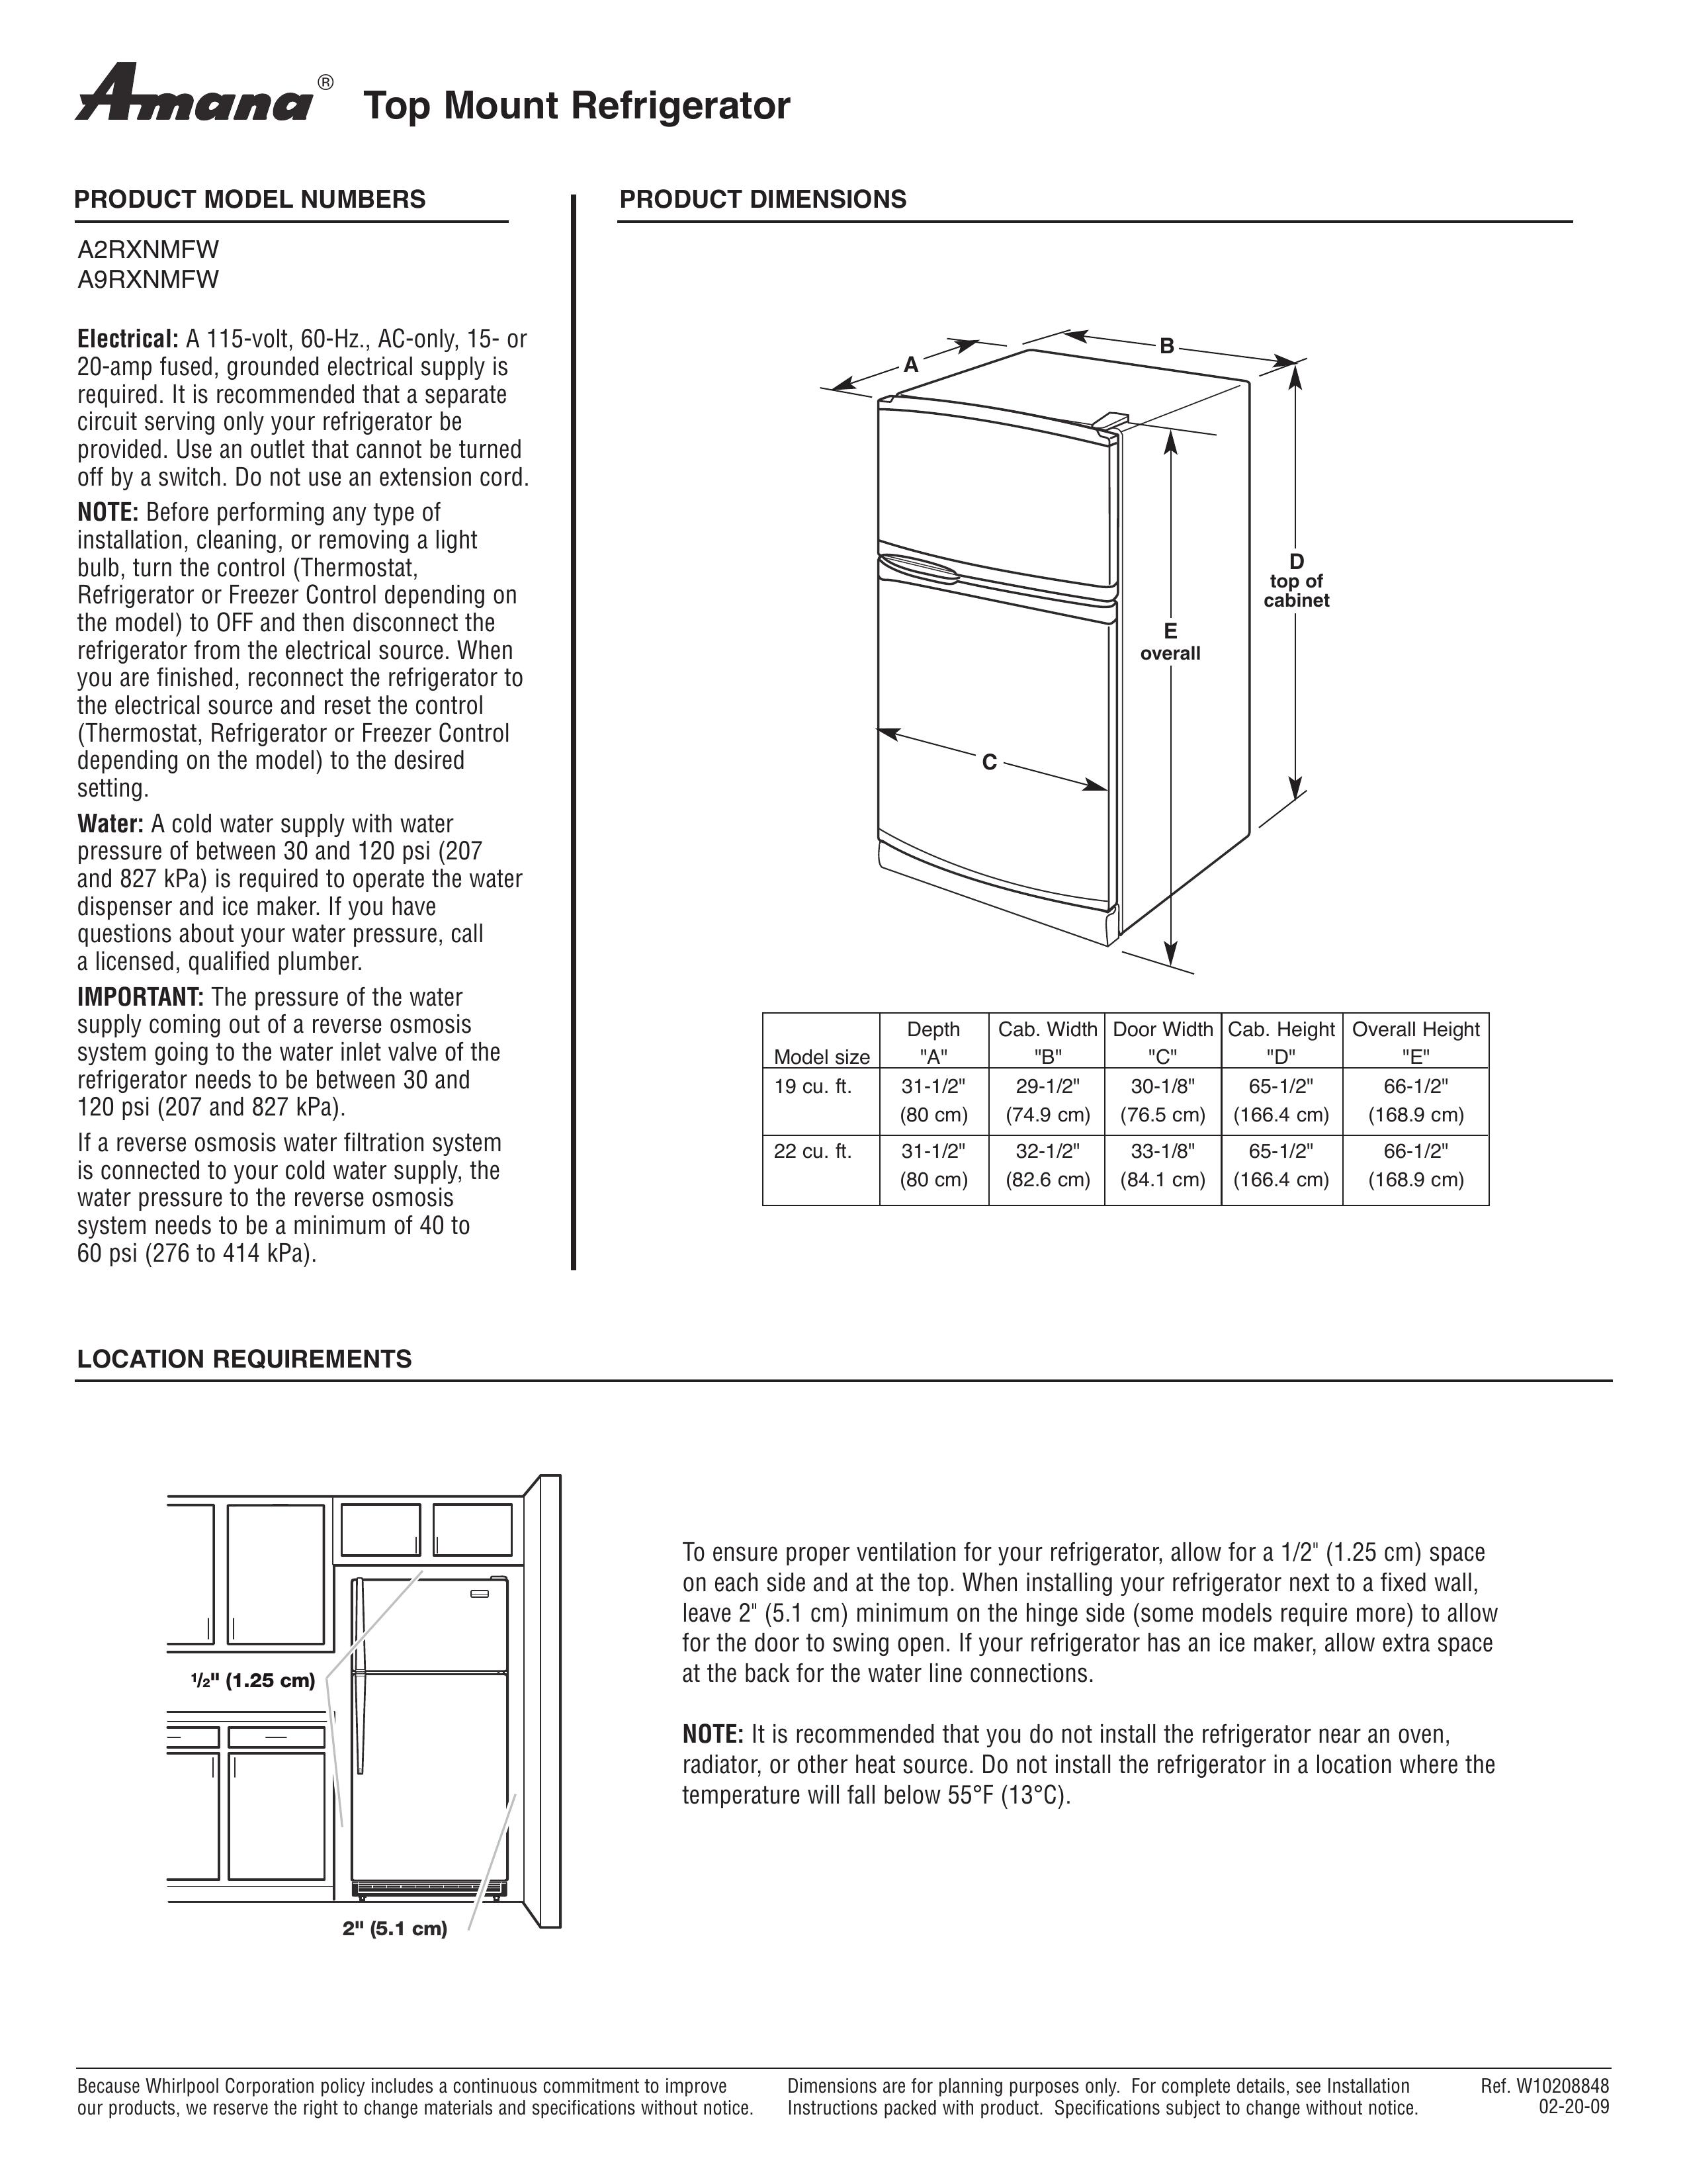 Amana A9RXNMFW Refrigerator User Manual